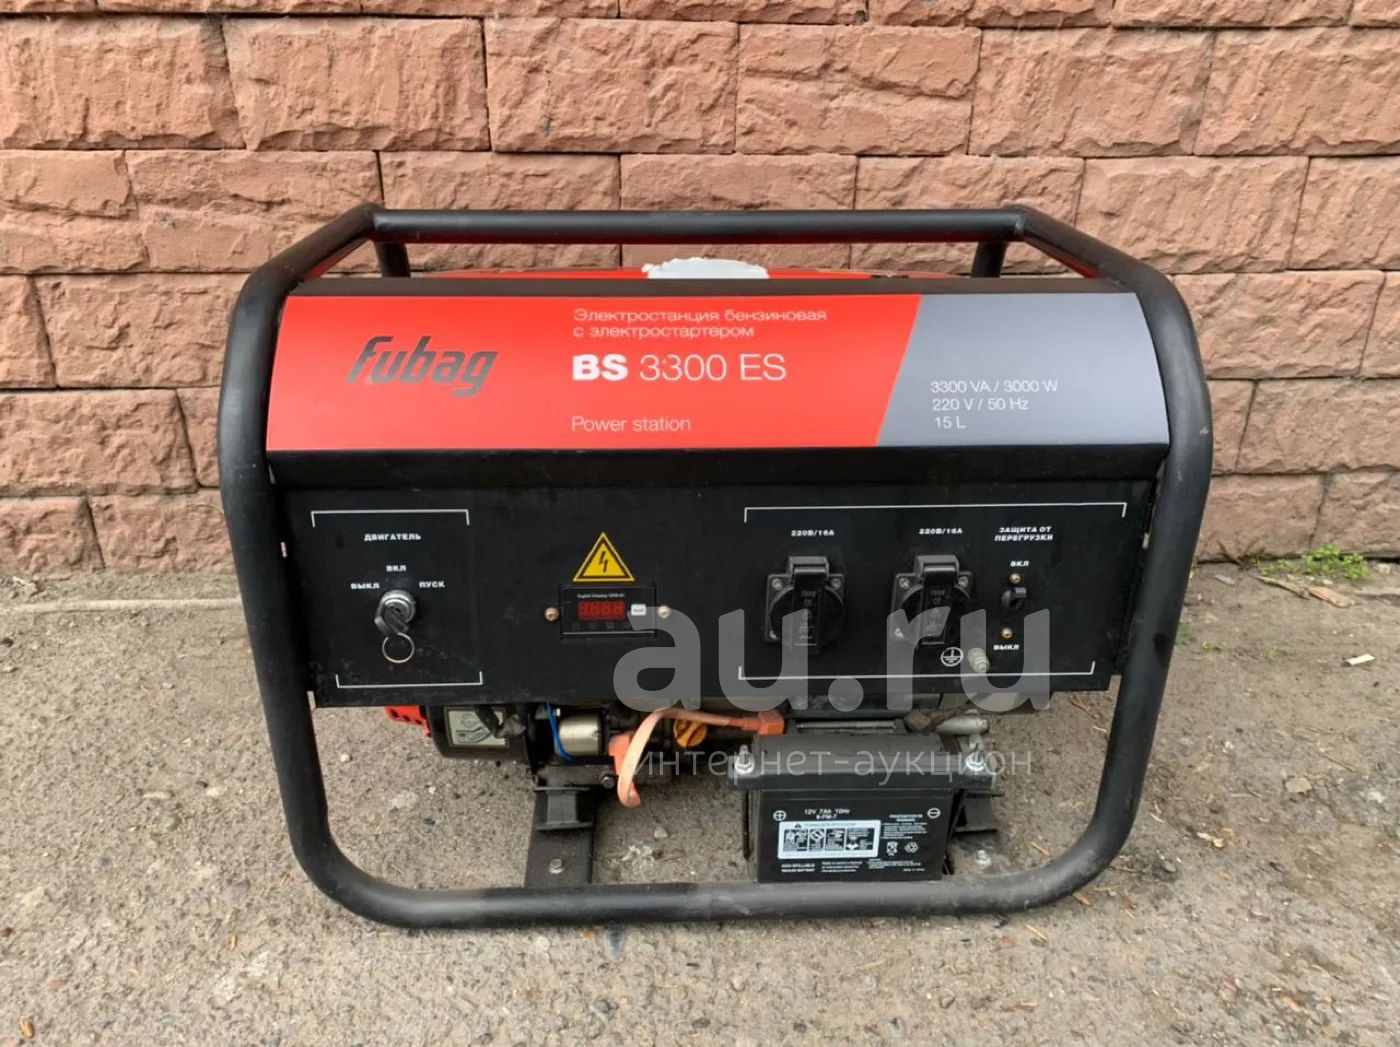  бензиновая Fubag BS 3300 ES с электростартером —  .